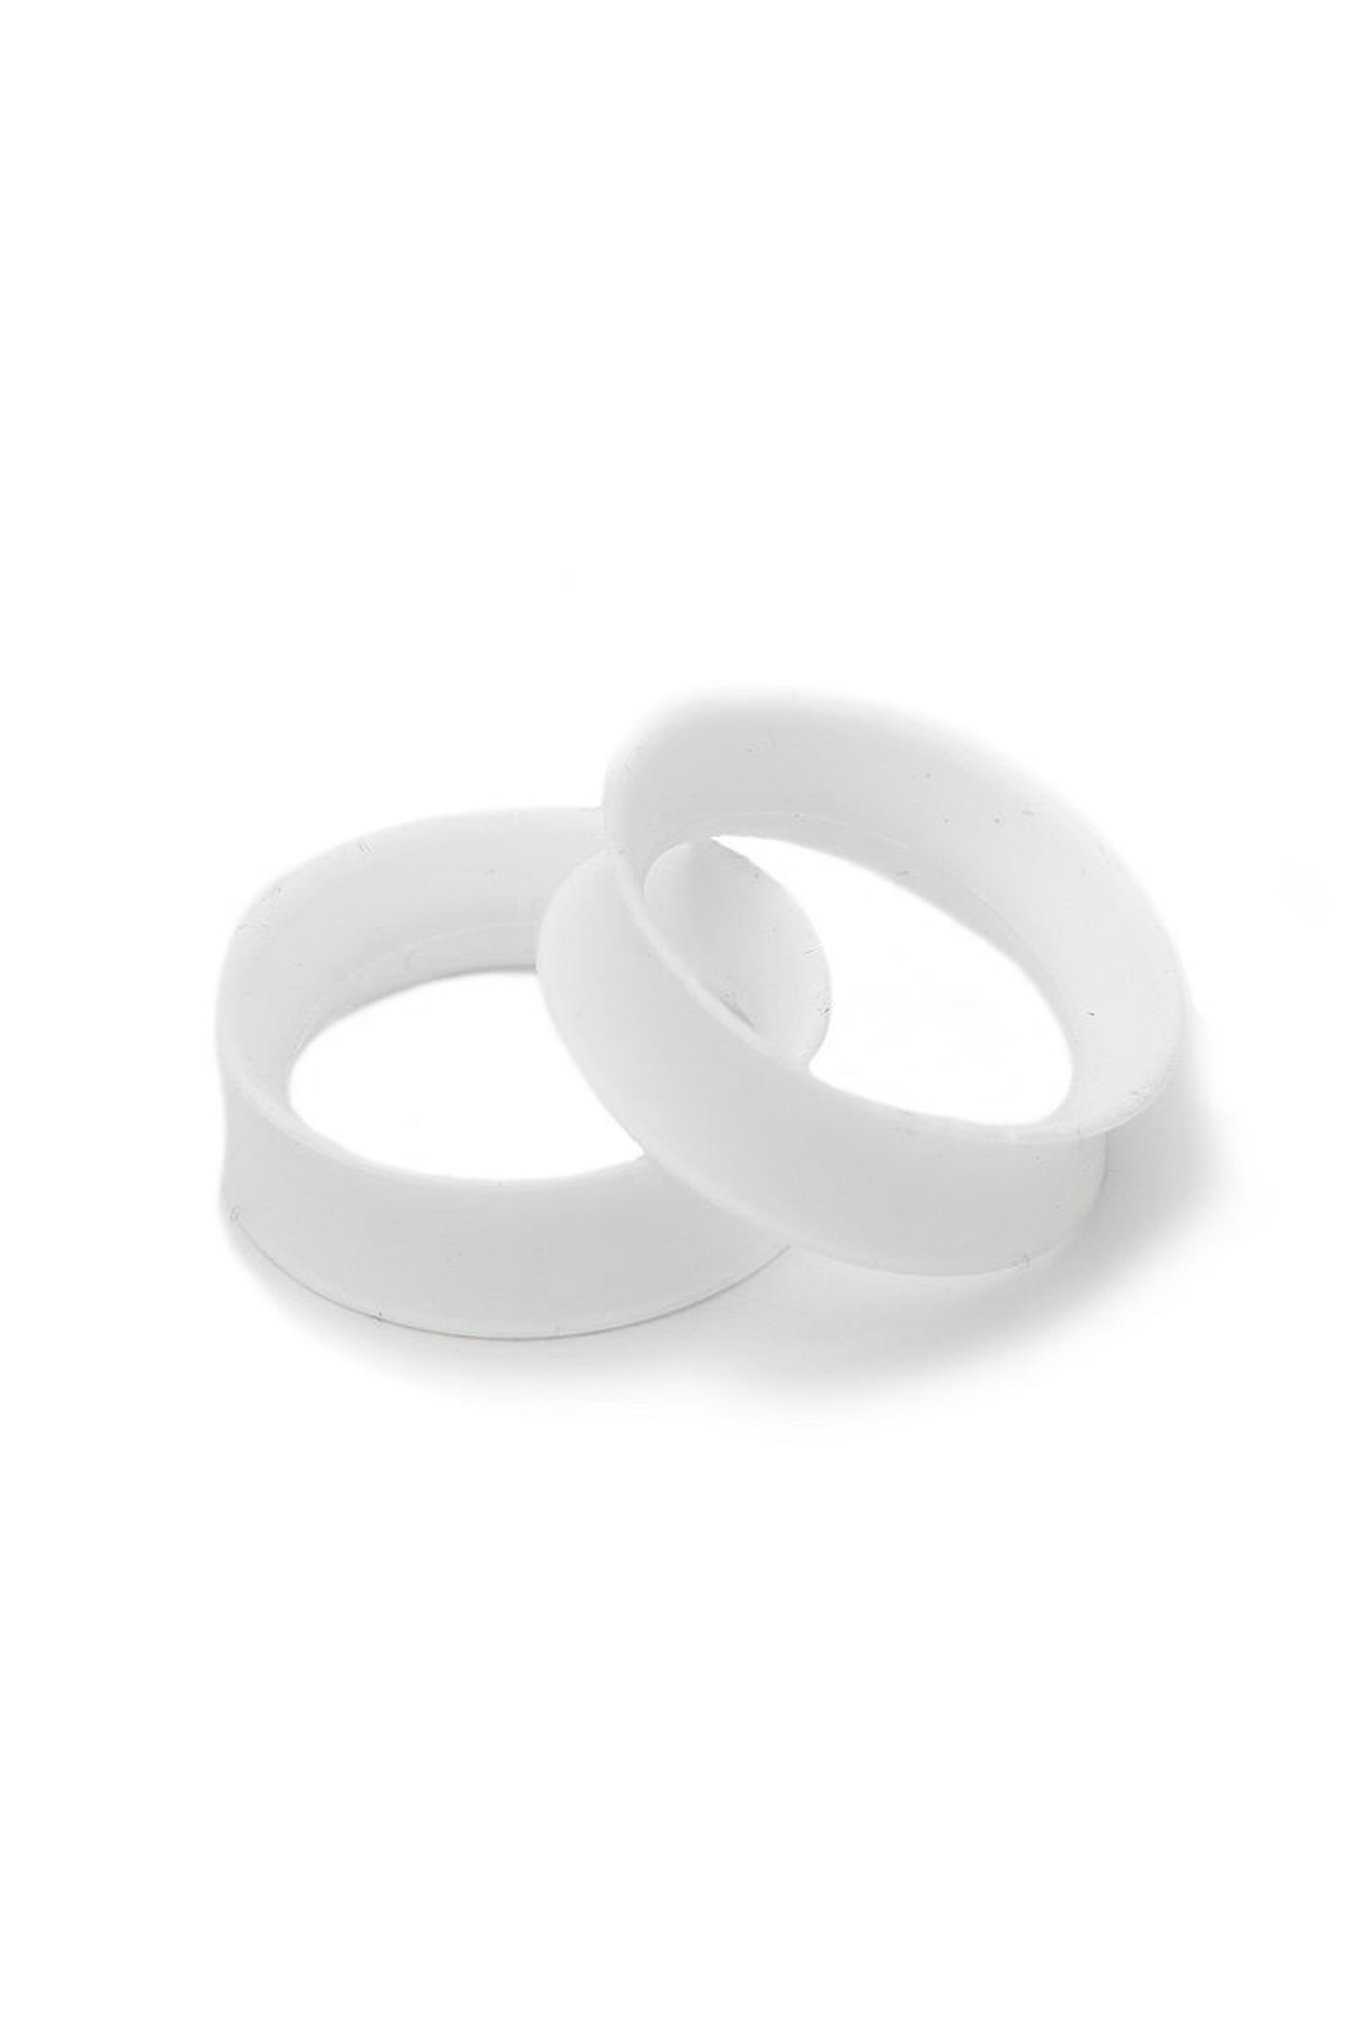 Kaos Softwear White Earskin Eyelet Plug 2 Pack, , hi-res